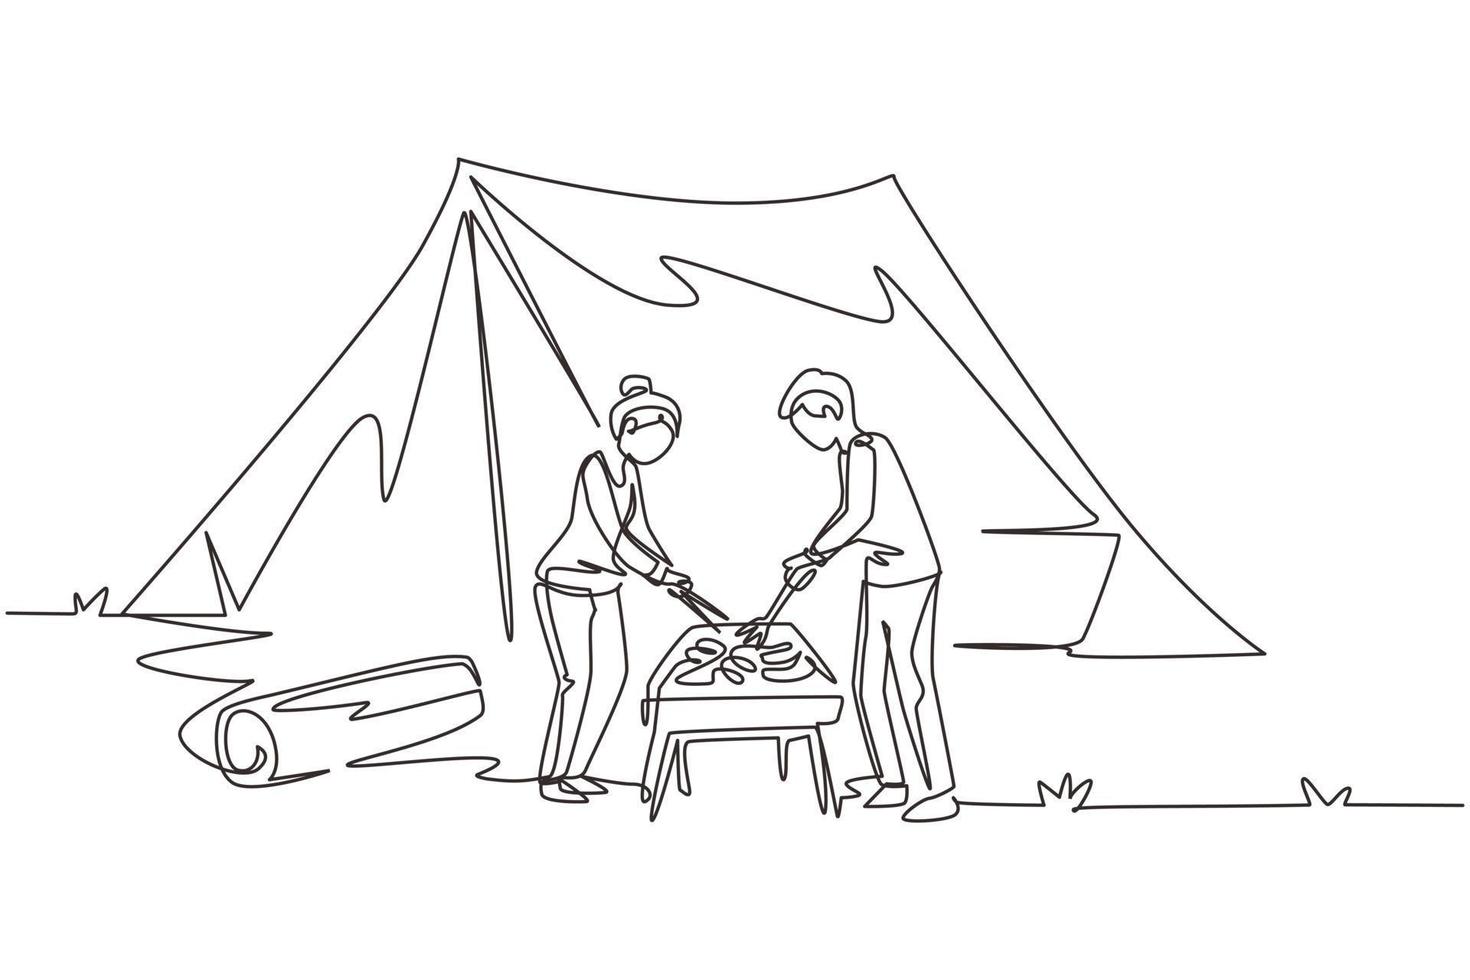 único desenho de uma linha casal feliz está fazendo churrasco na montanha. homem mulher acampando na floresta, recreação ativa, encontro romântico fora da cidade. ilustração em vetor design de desenho de linha contínua